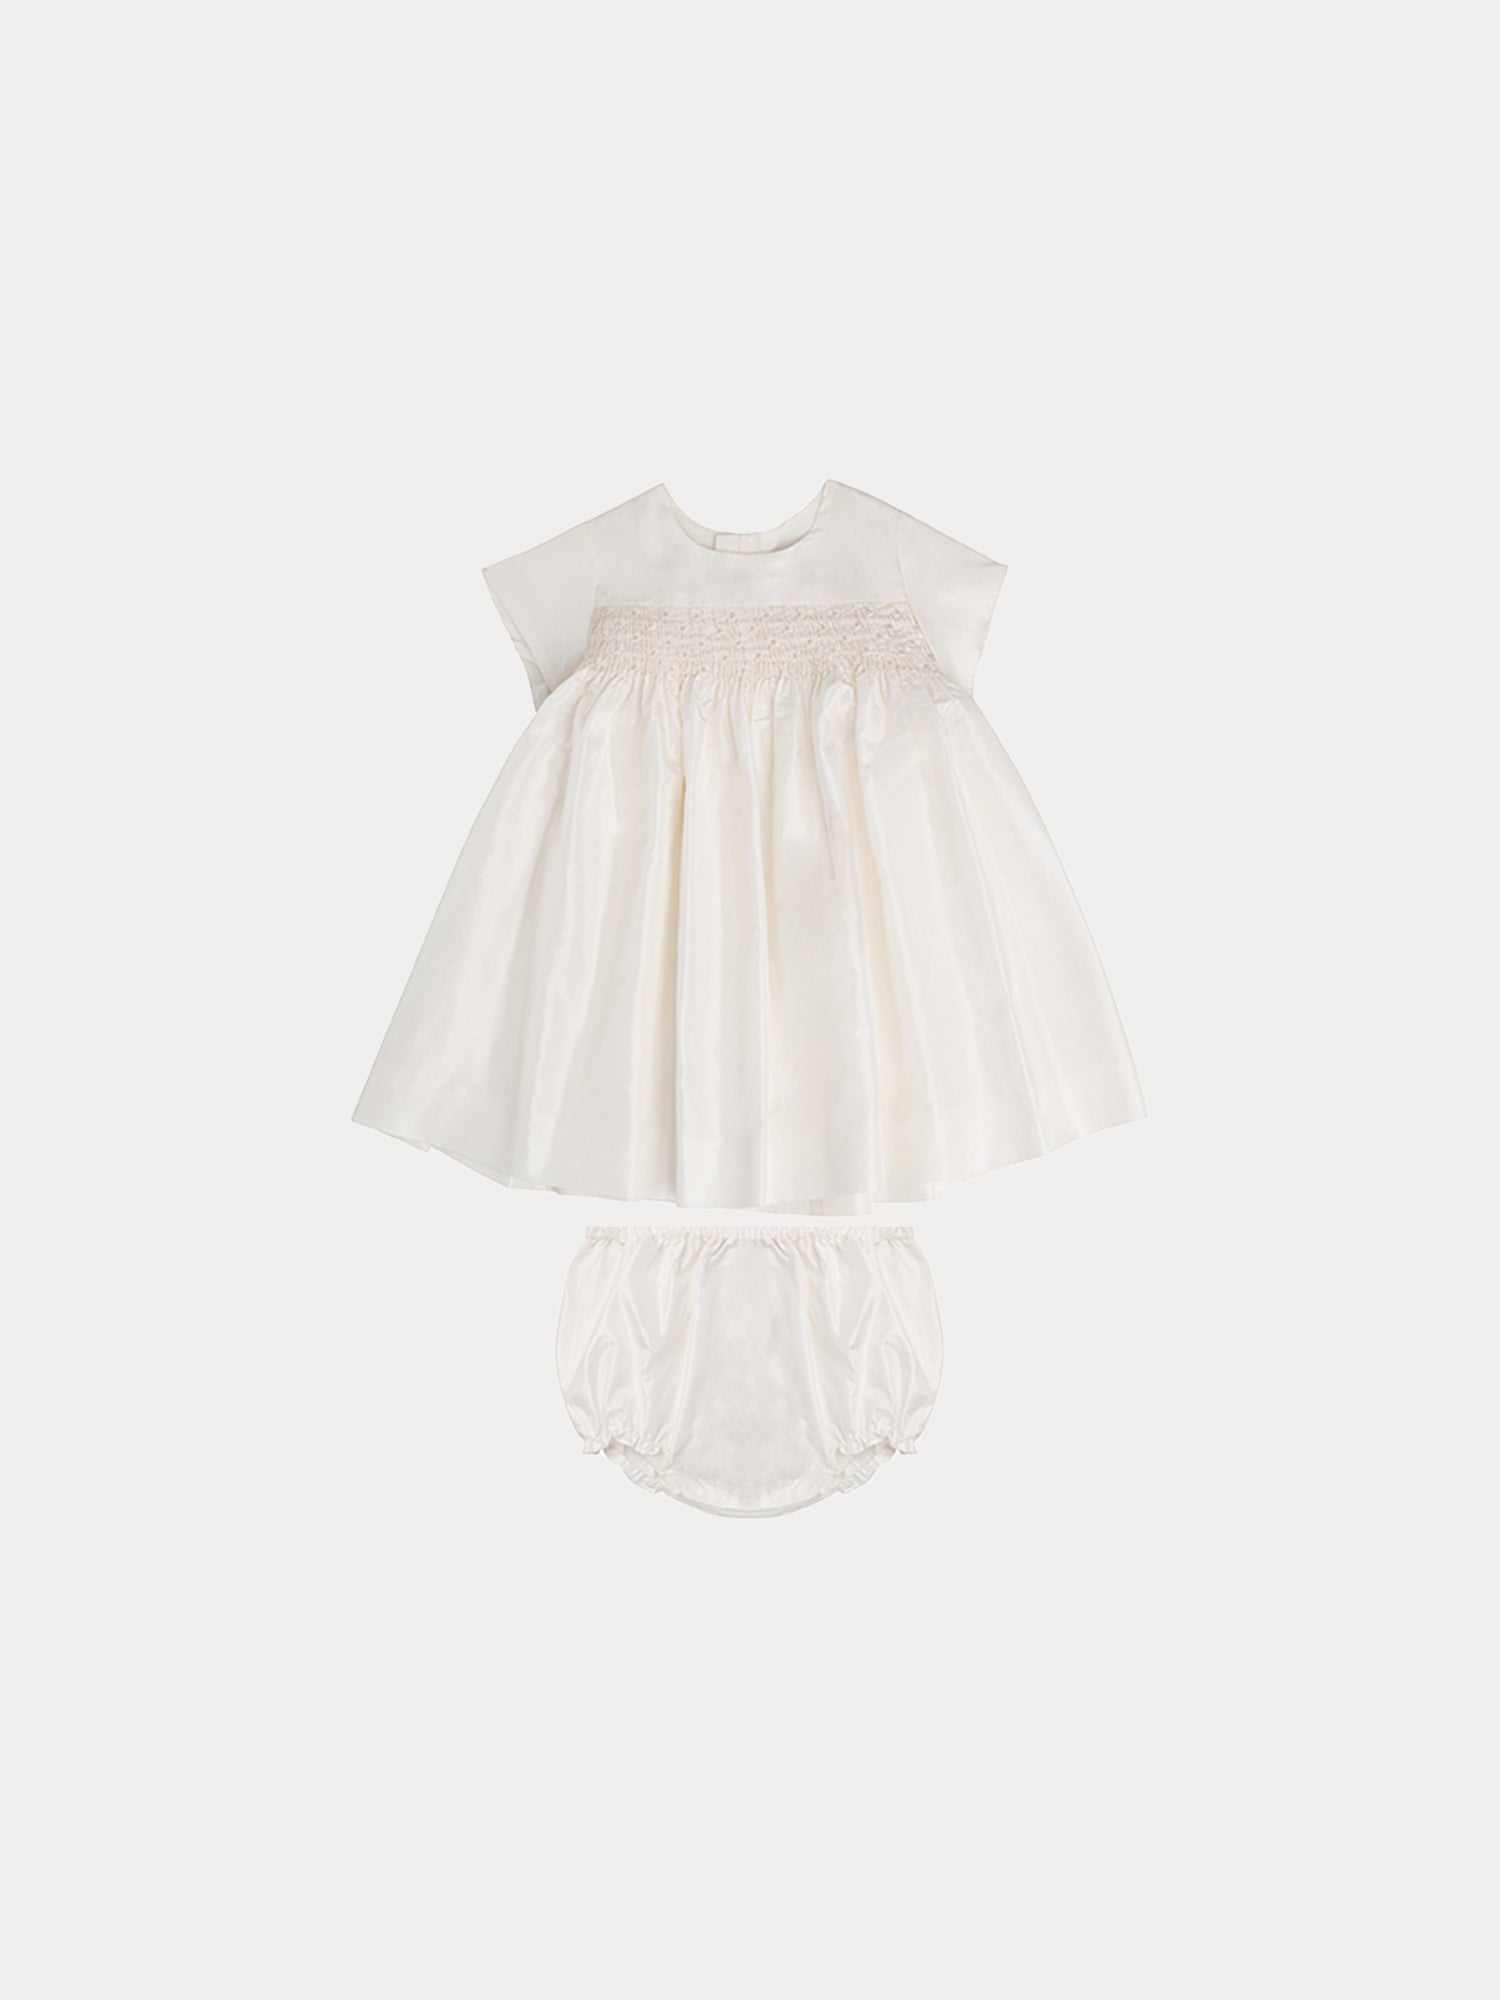 Girls White Dresses | Buy Baby Girls Dresses Online Australia- THE ICONIC